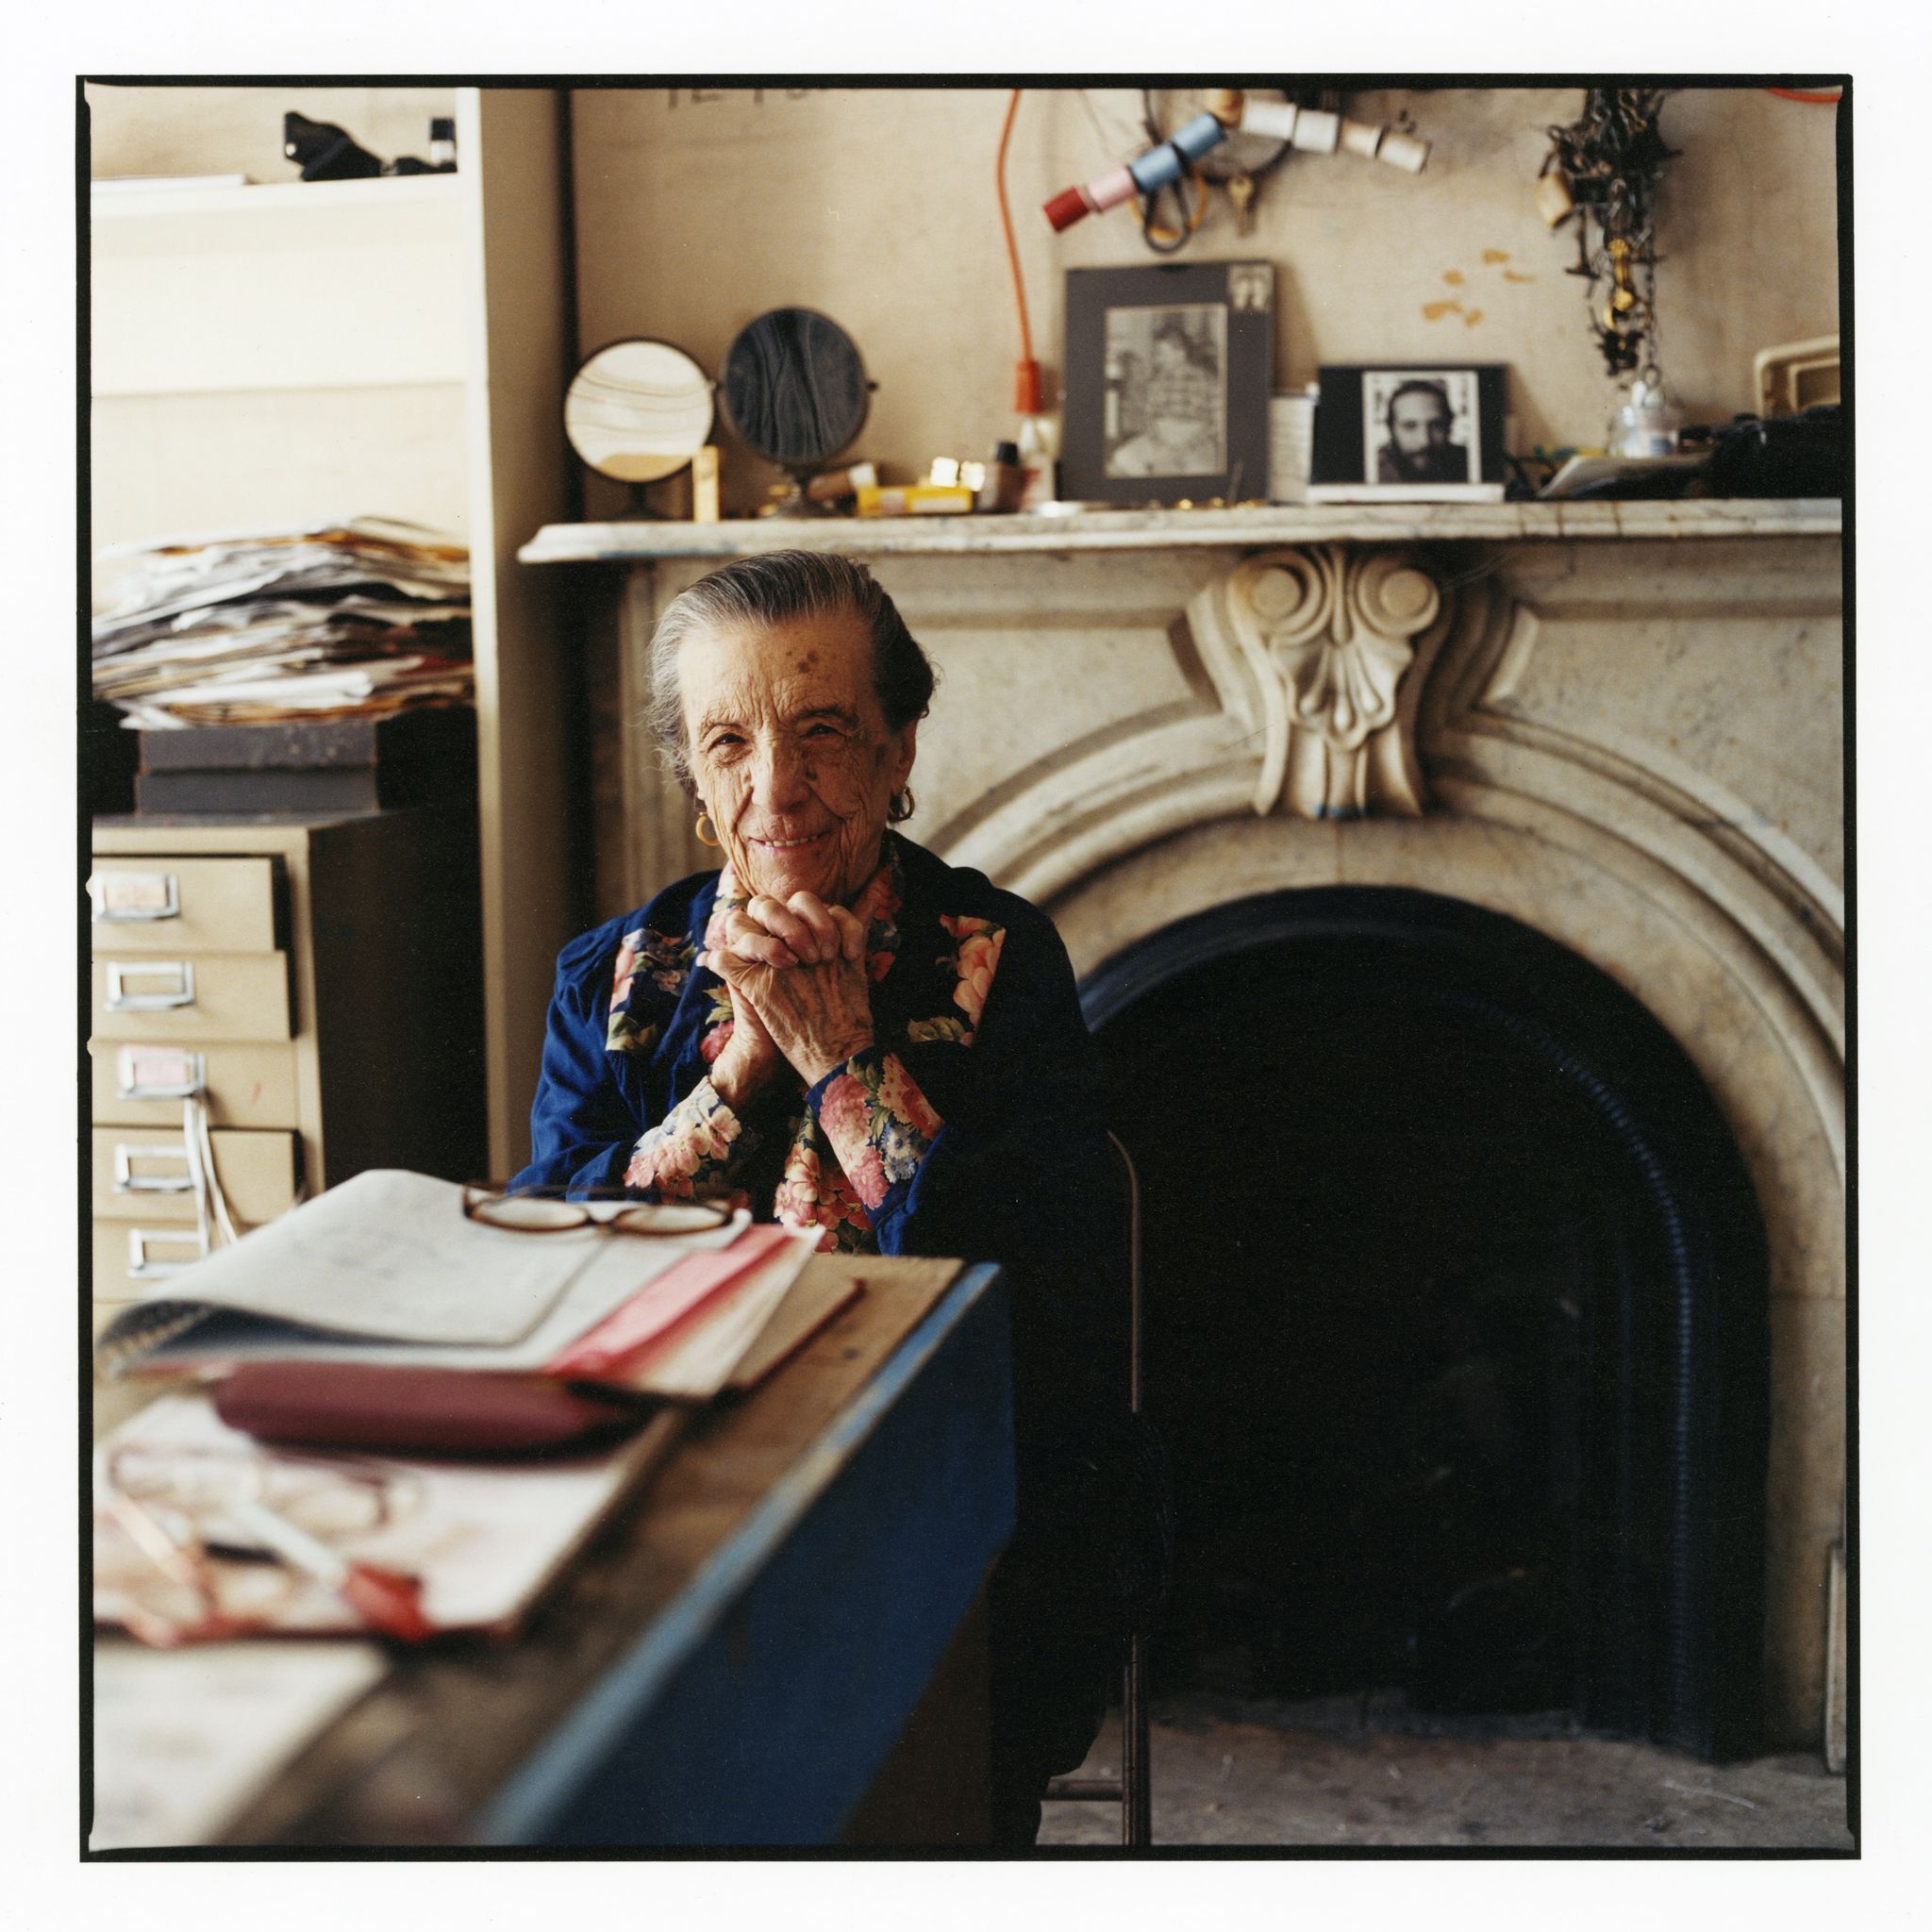 Louise Bourgeois, arte, arte femminista, libri fotografici, Jean-François Jaussaud,  Femme Maison